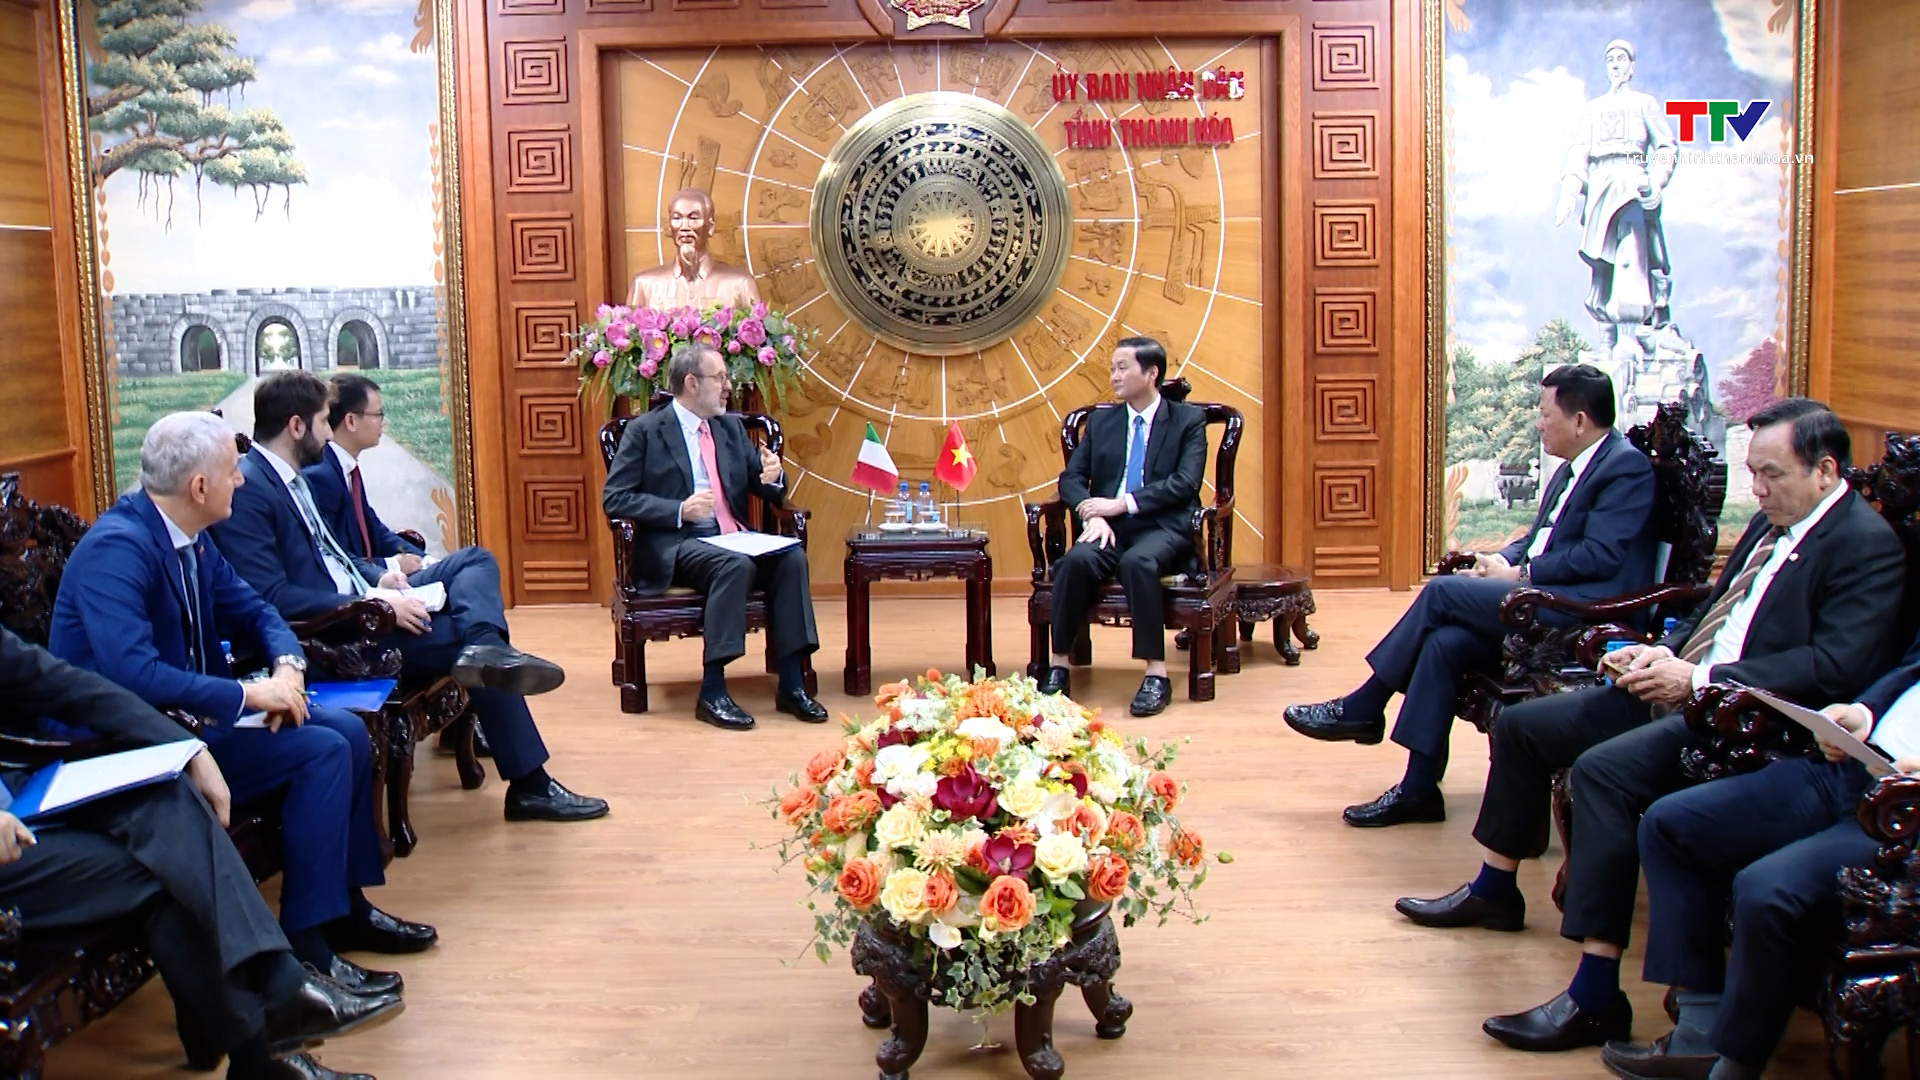 Chủ tịch UBND tỉnh Thanh Hóa tiếp xã giao Đại sứ Italia tại Việt Nam- Ảnh 3.